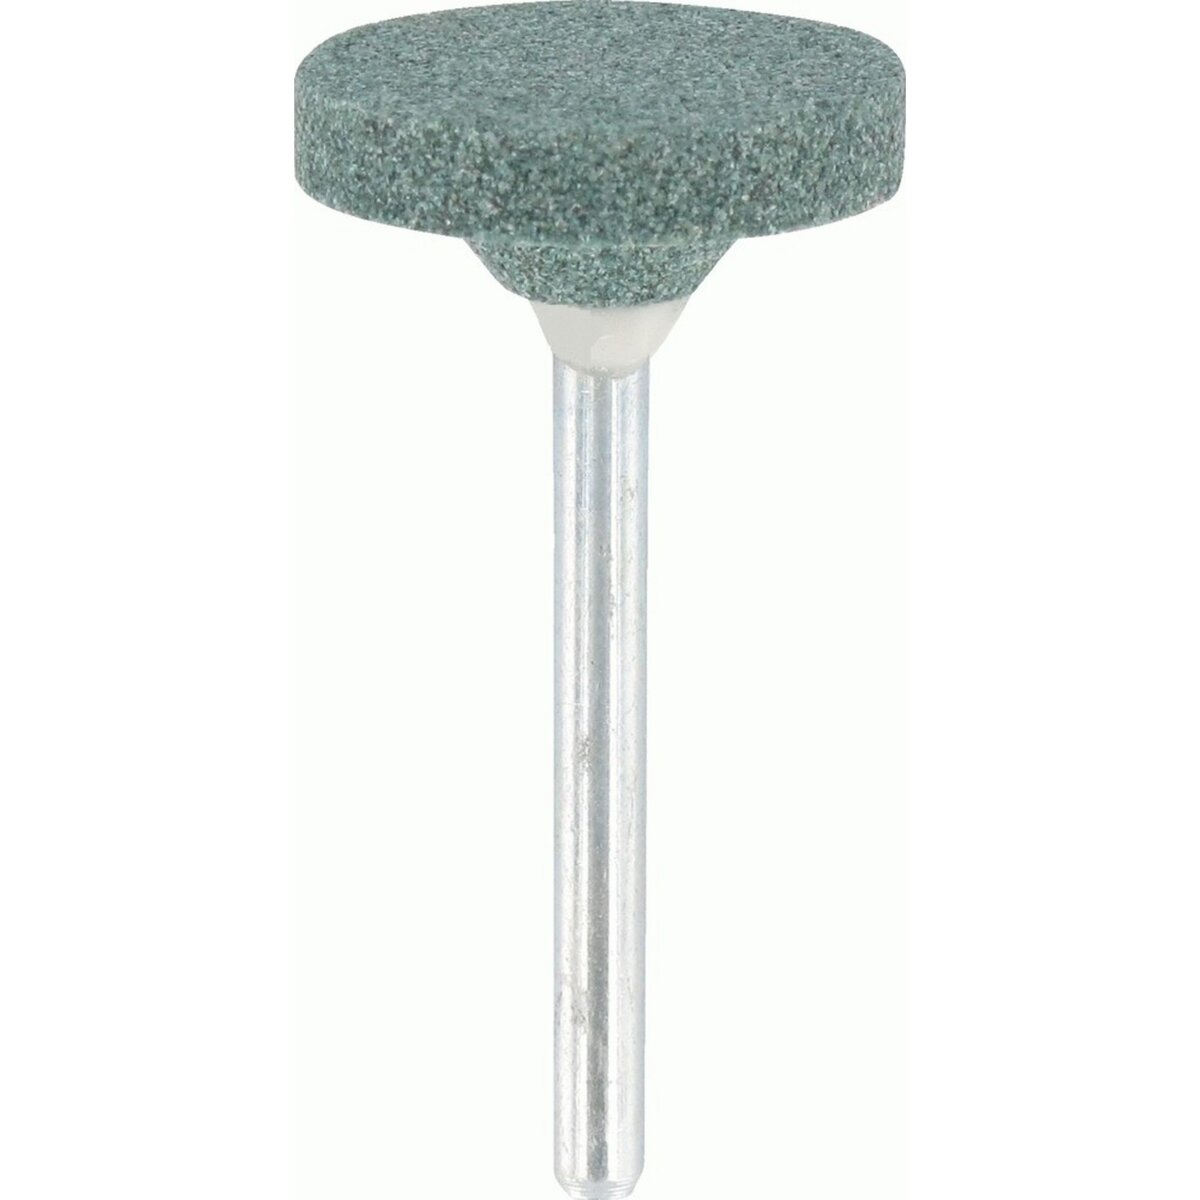 Dremel Meule à rectifier Dremel 85422 pour matériaux non-ferreux - Ø 19,8 mm